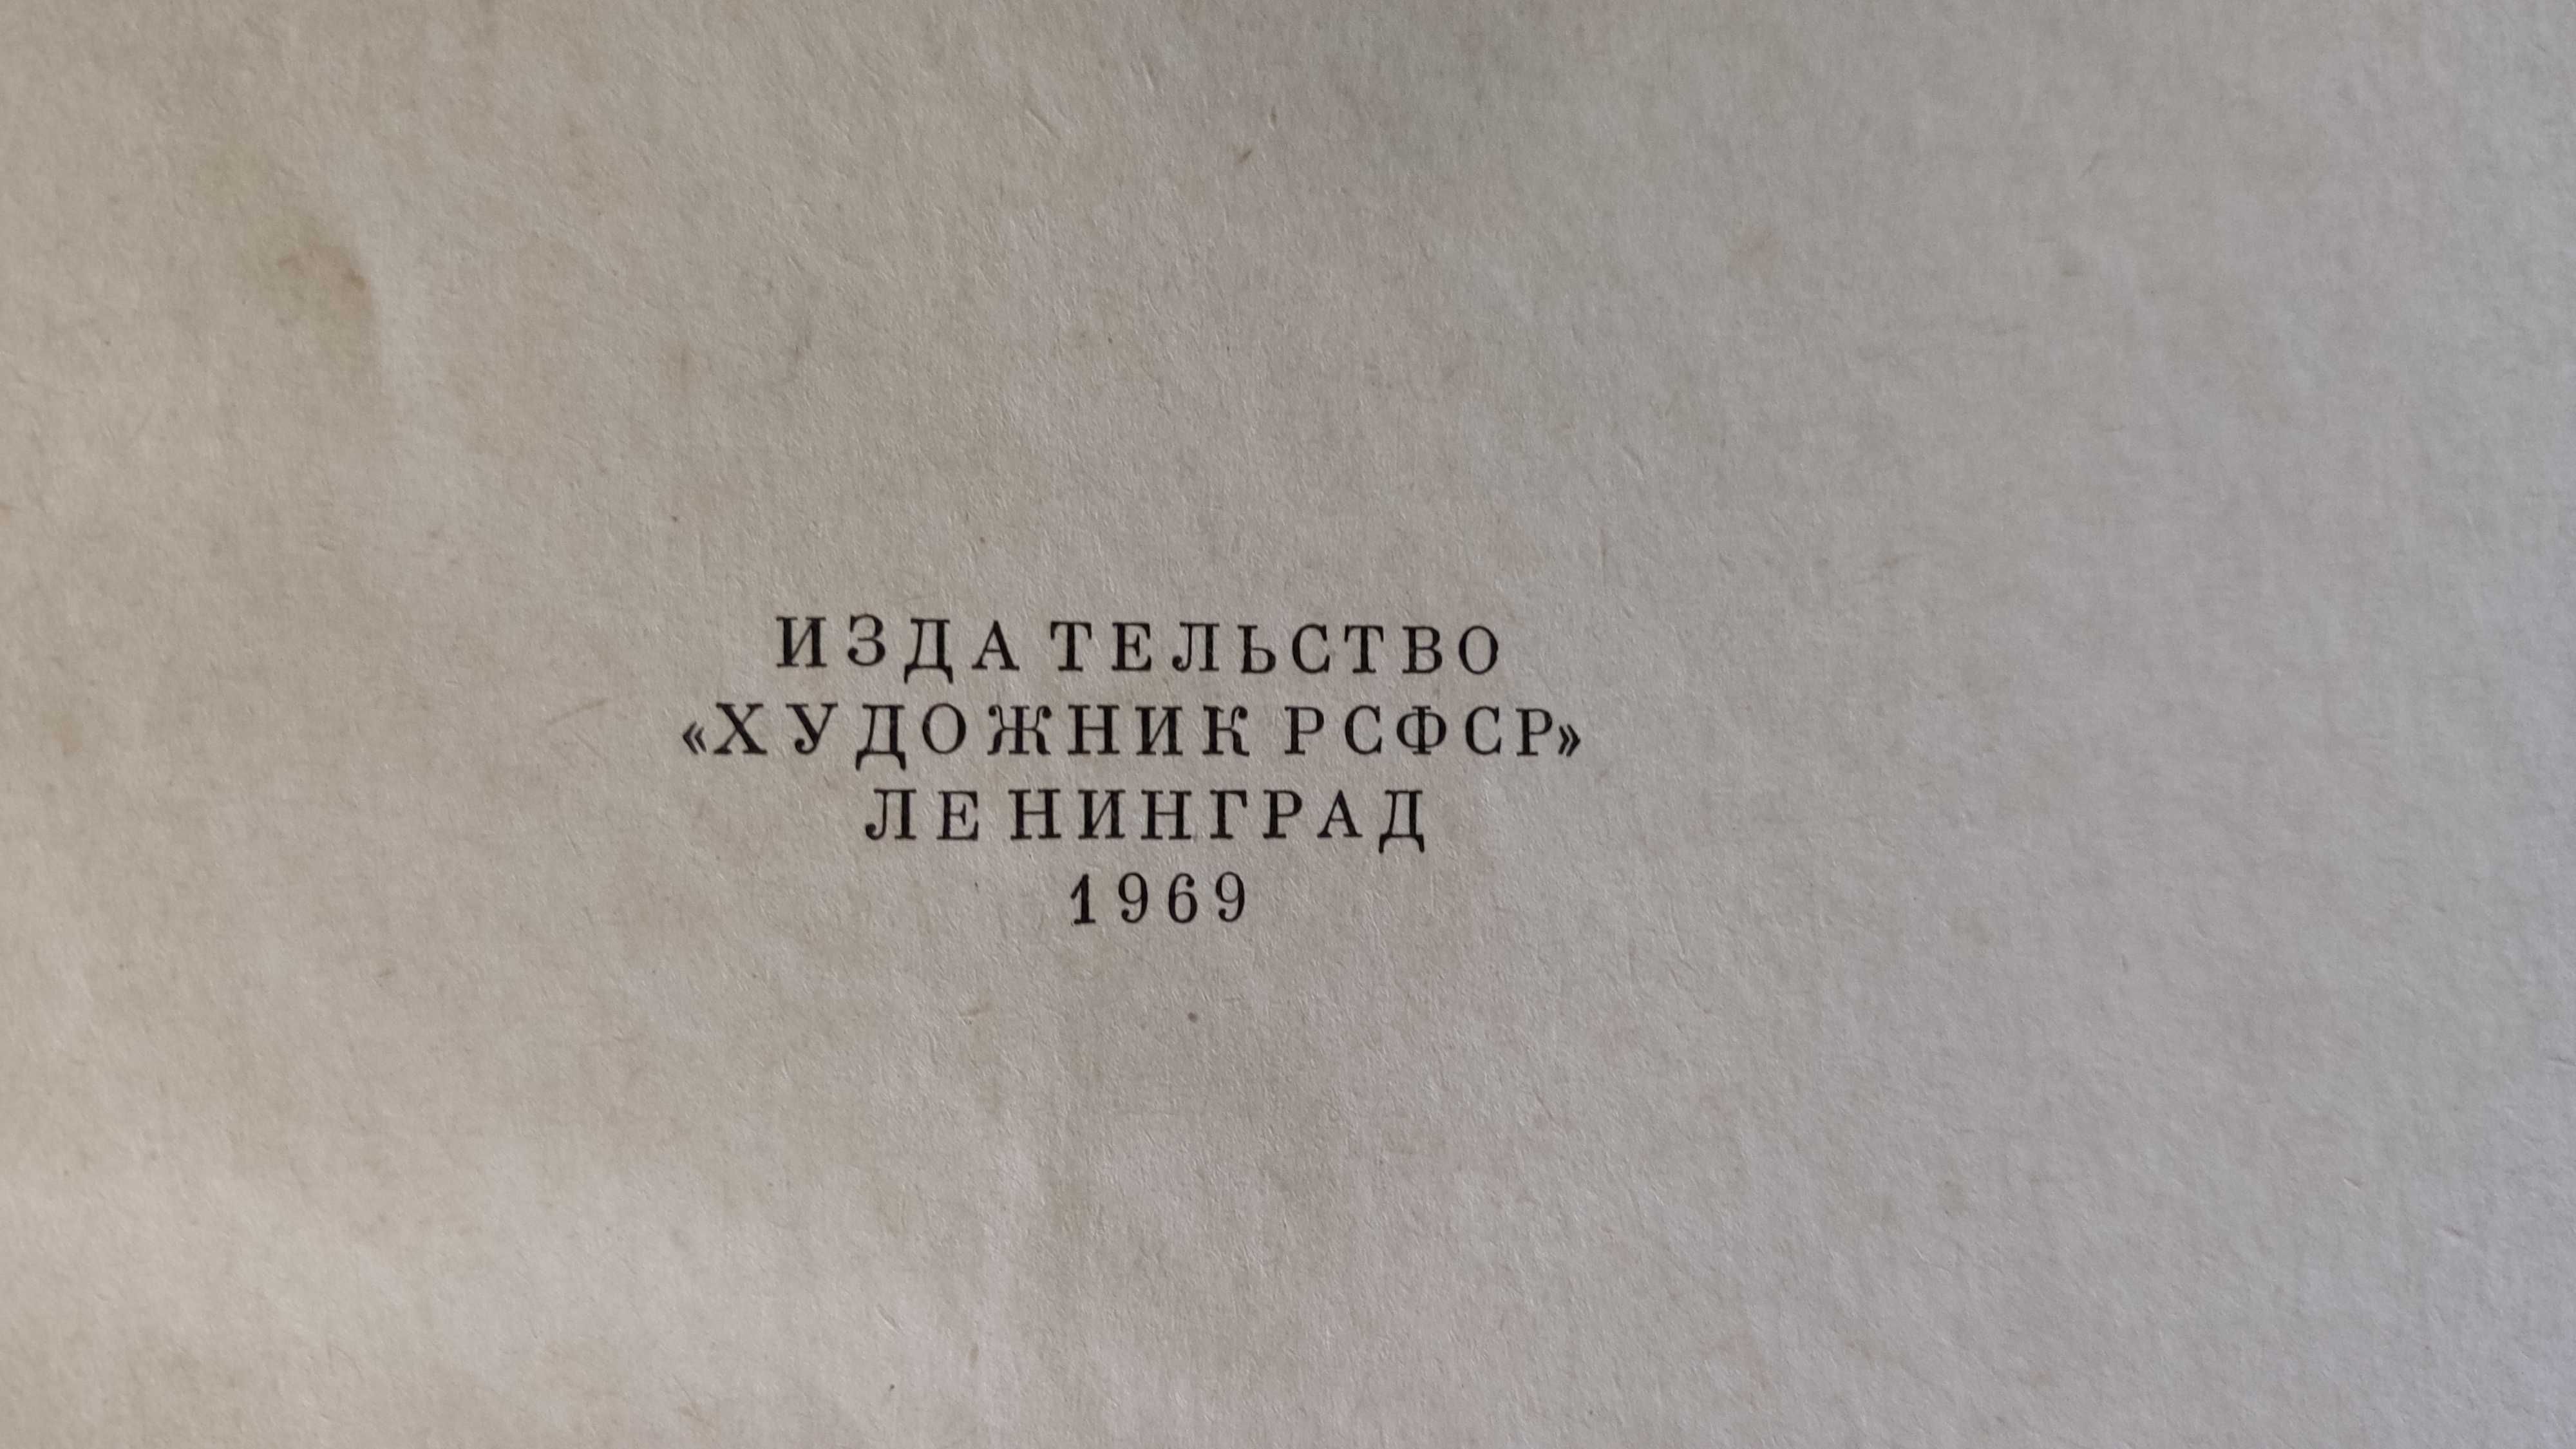 "Новое о Репине" книга 1969 г. купить недорого Киев